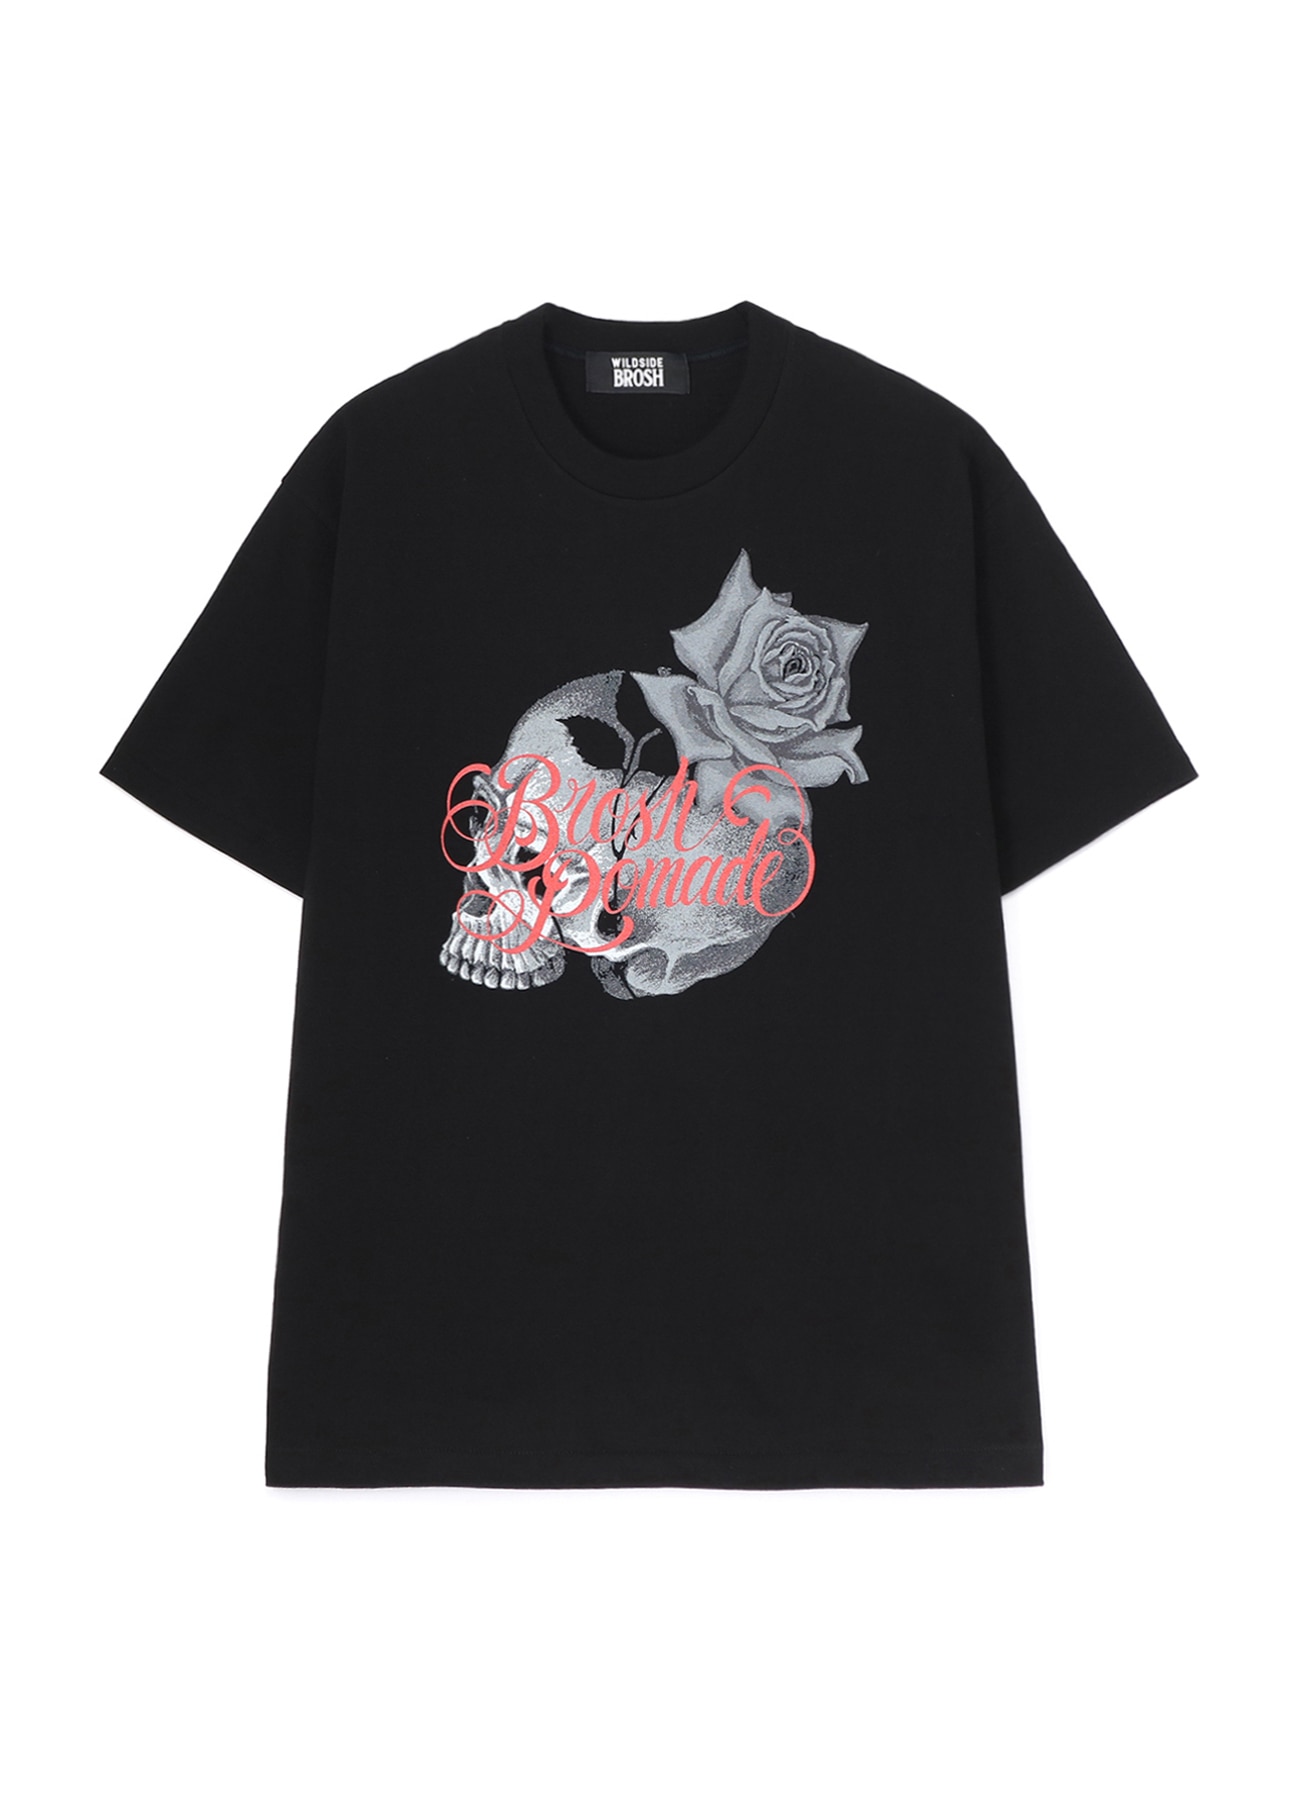 【5/25 12:00(JST) release】WILDSIDE × BROSH T-shirt (SCULLROSE)